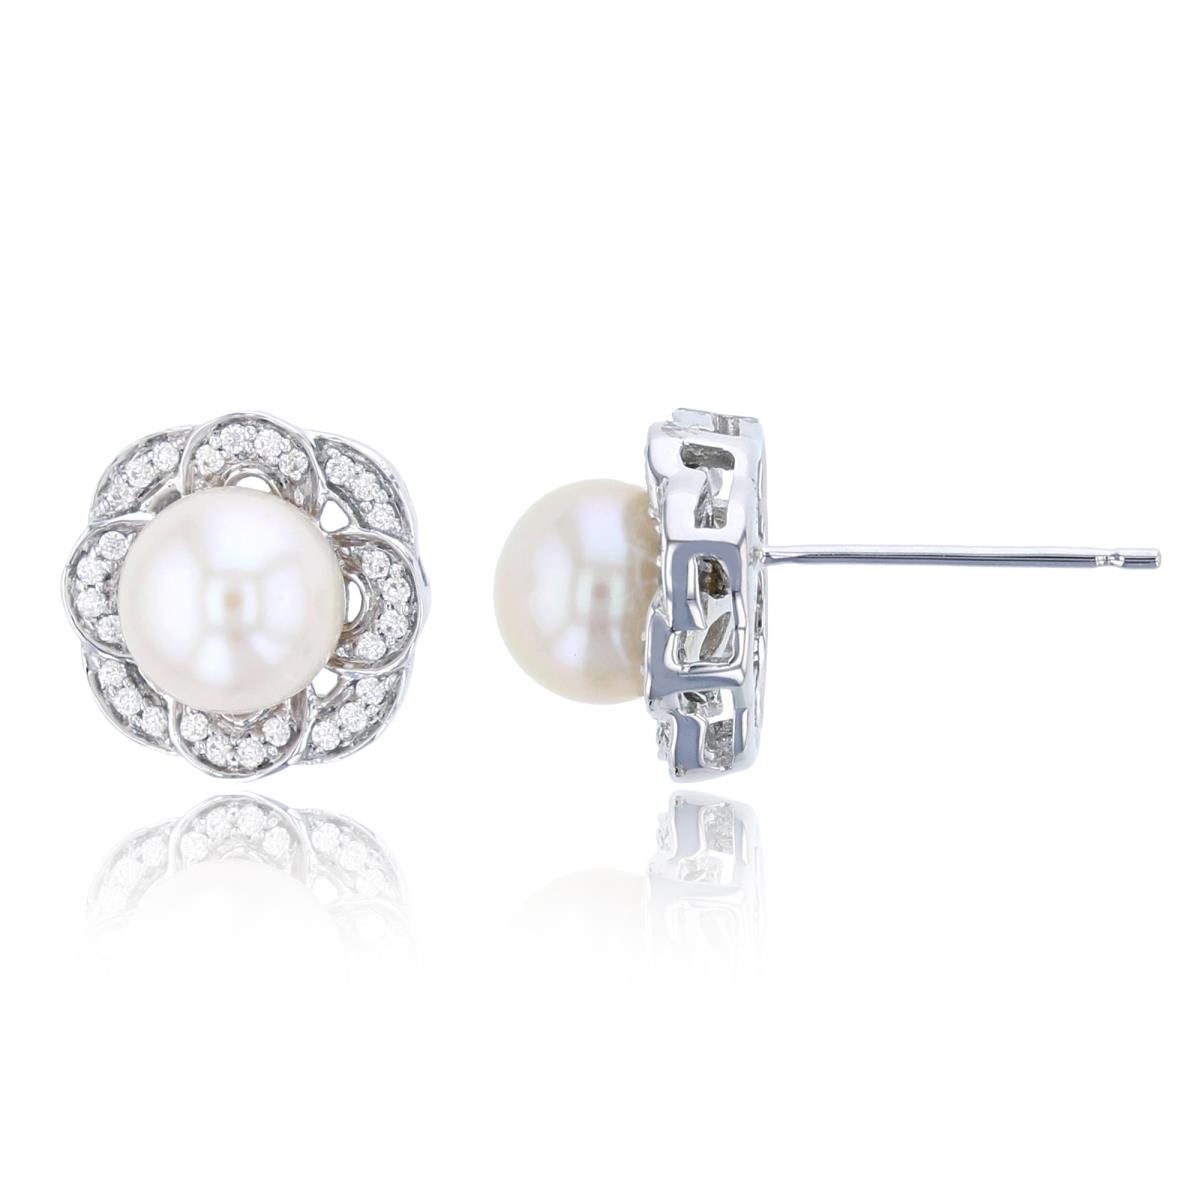 14K White Gold 0.08 CTTW Diamond & 6mm Rnd White Pearl Stud Earring